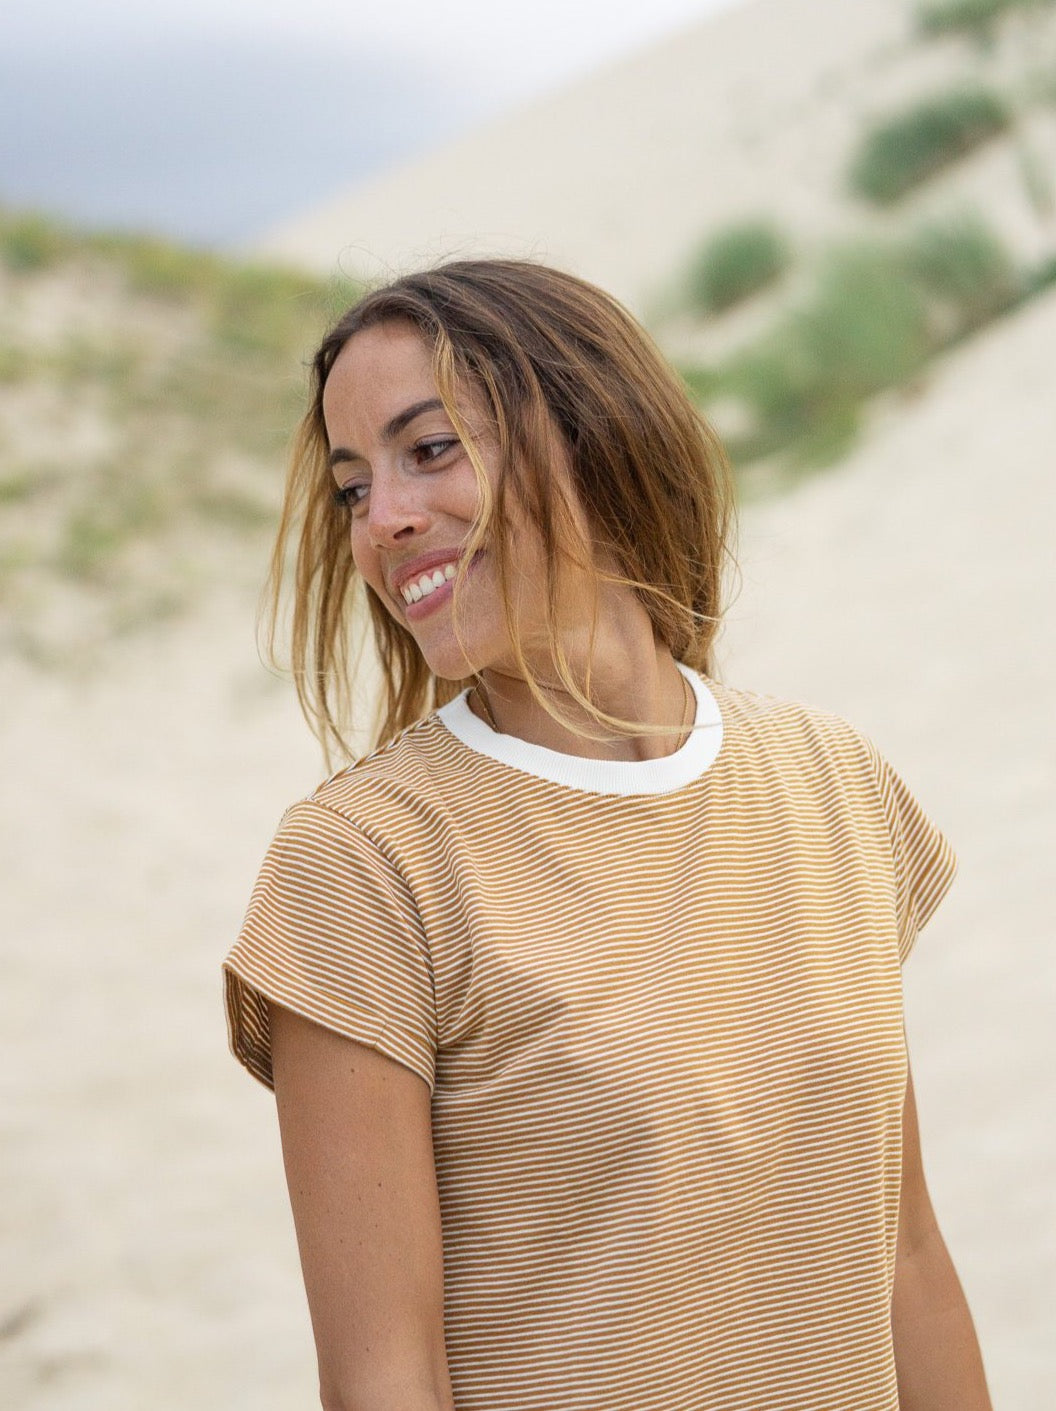 Rachel trägt unser Fair Fashion Streifenshirt in creme senf aus 100% GOTS zertifizierter Biobaumwolle